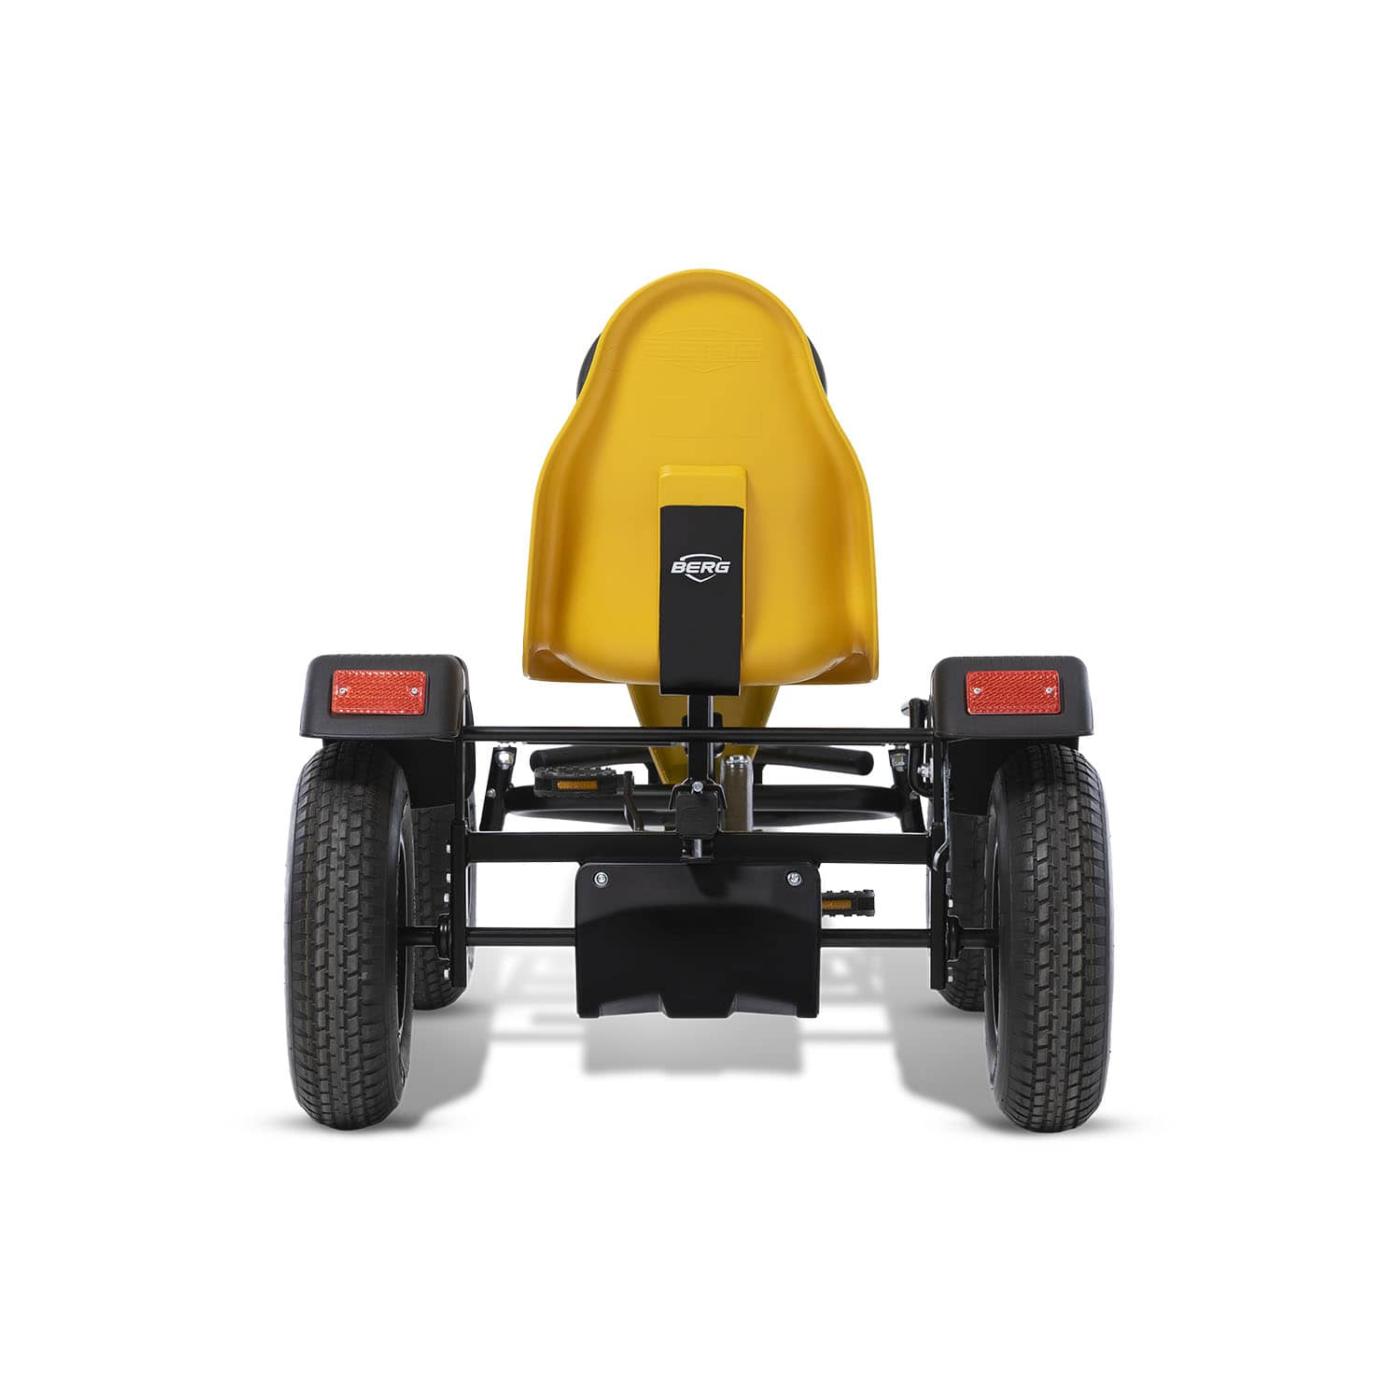 Quad de pedals BERG XL B.Super Yellow BFR-3 amb canvi de marxes